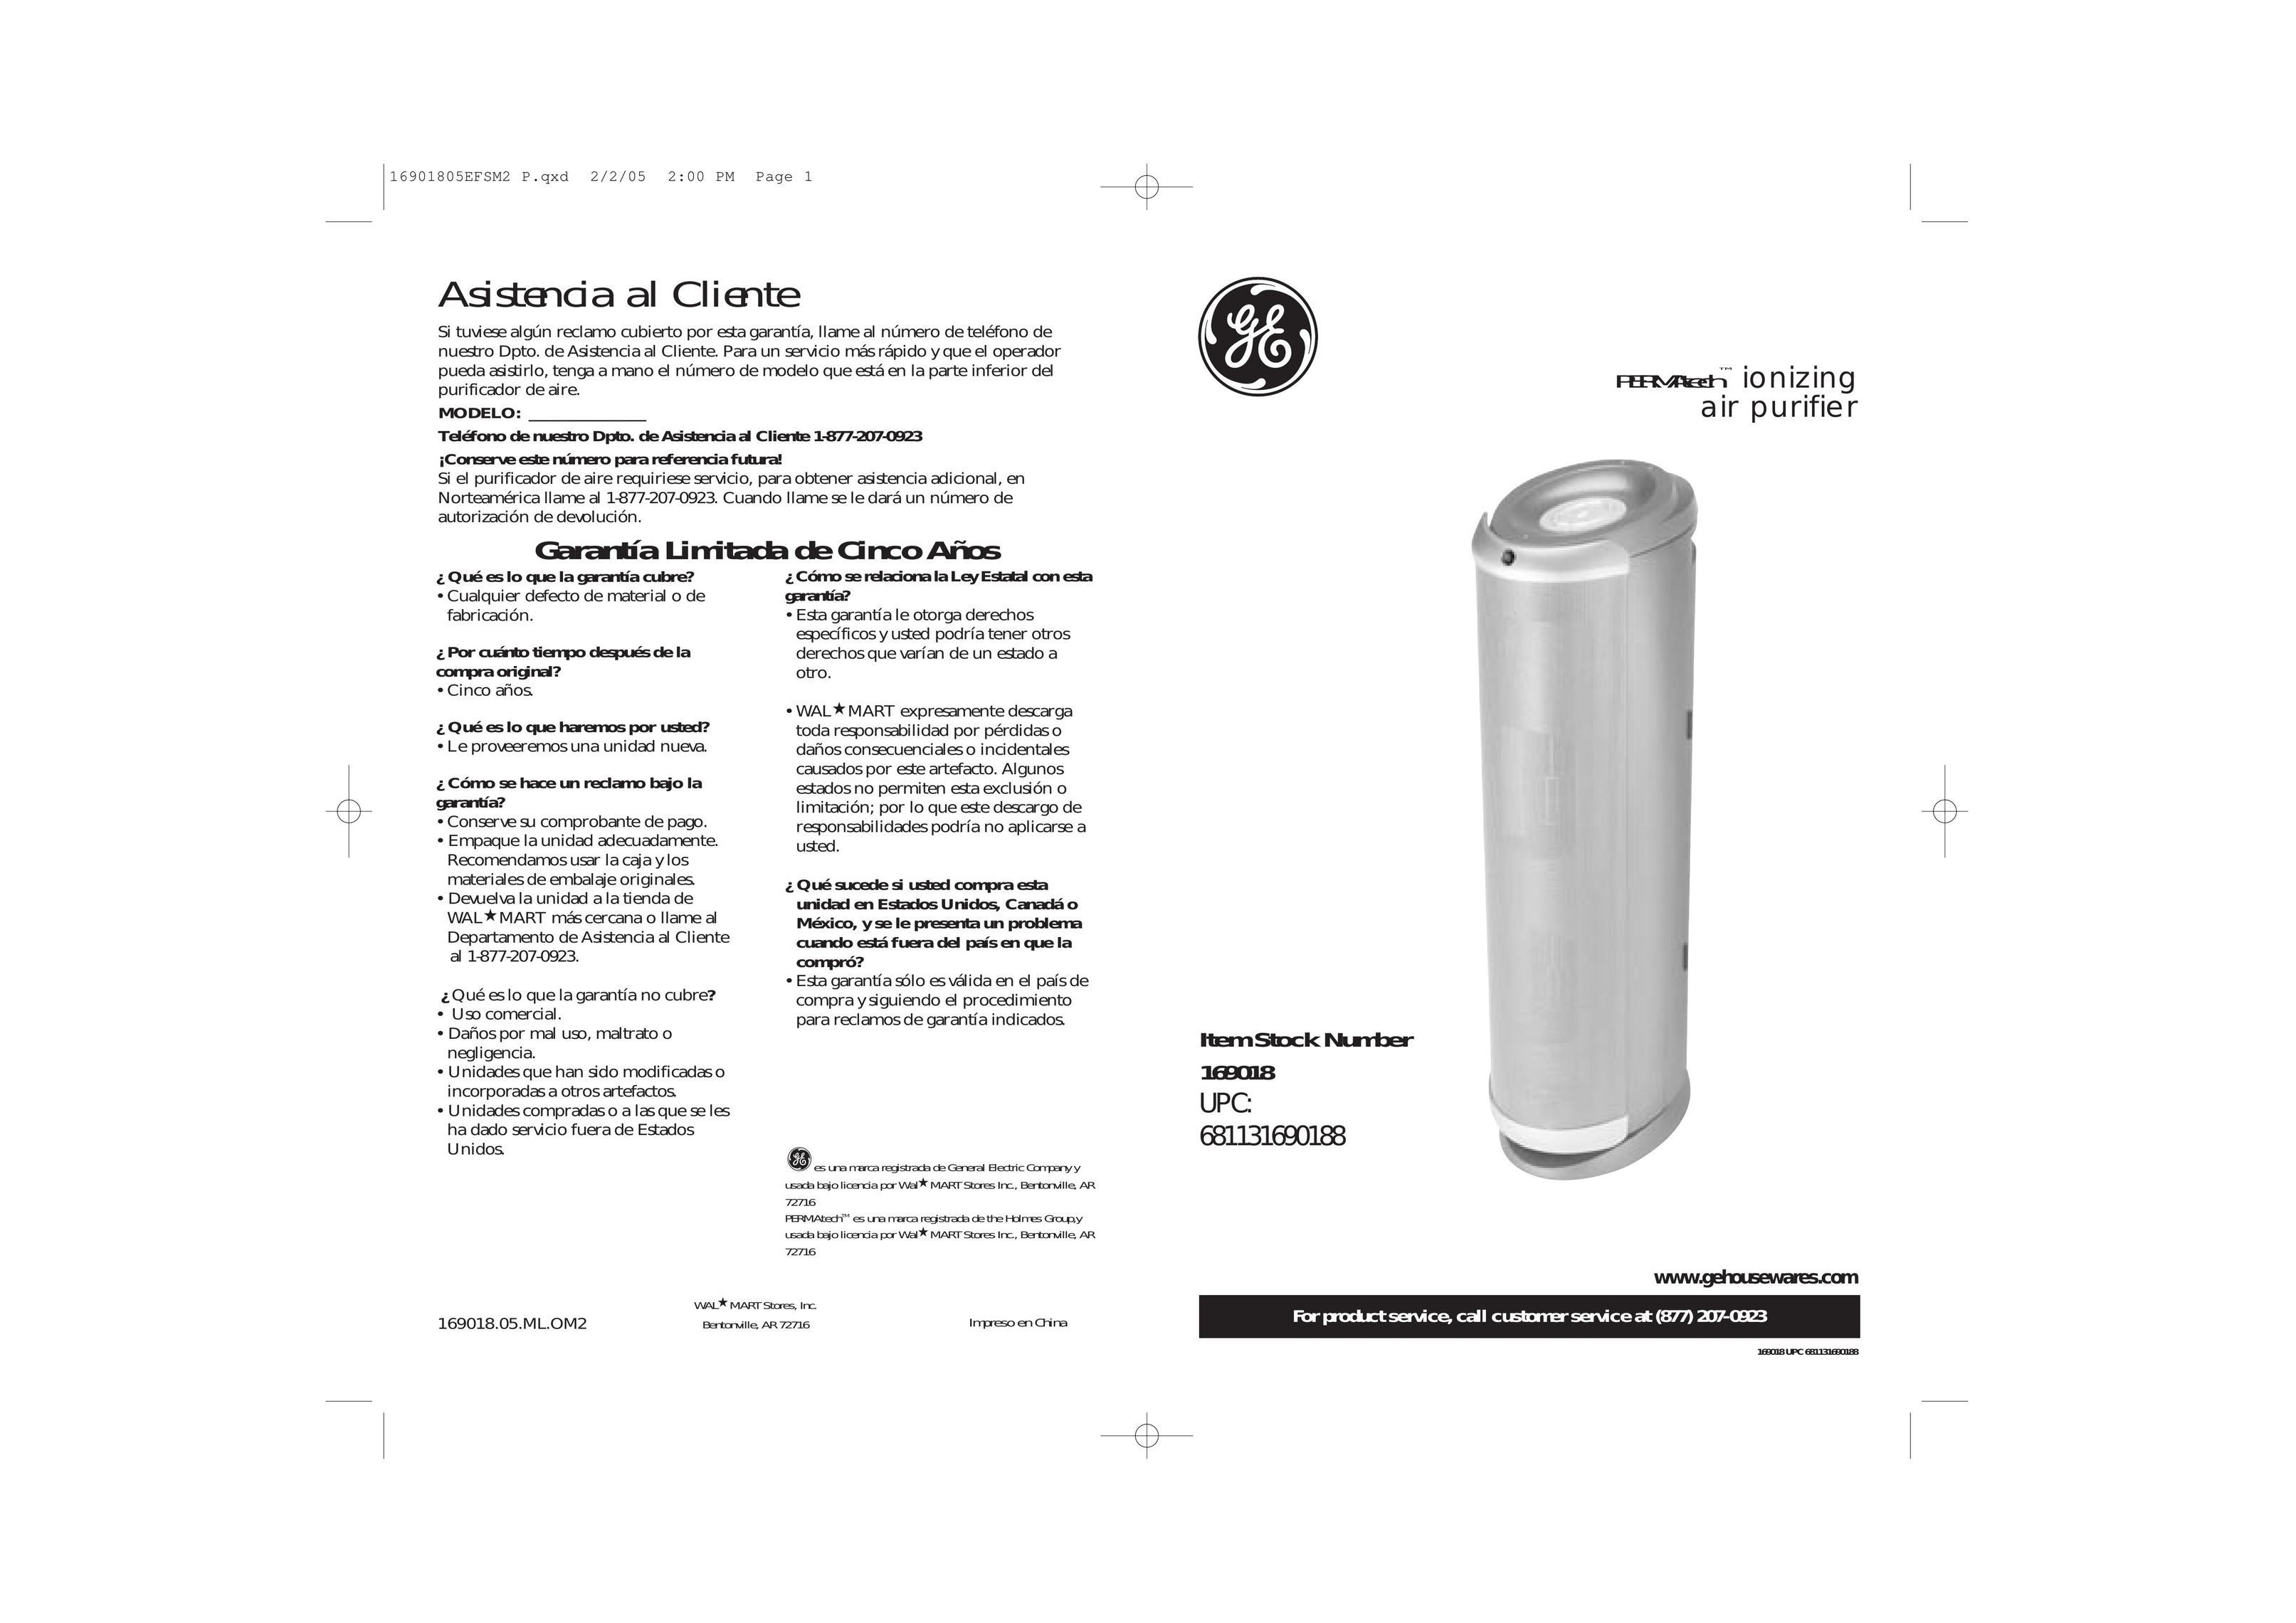 GE 681131690188 Air Cleaner User Manual